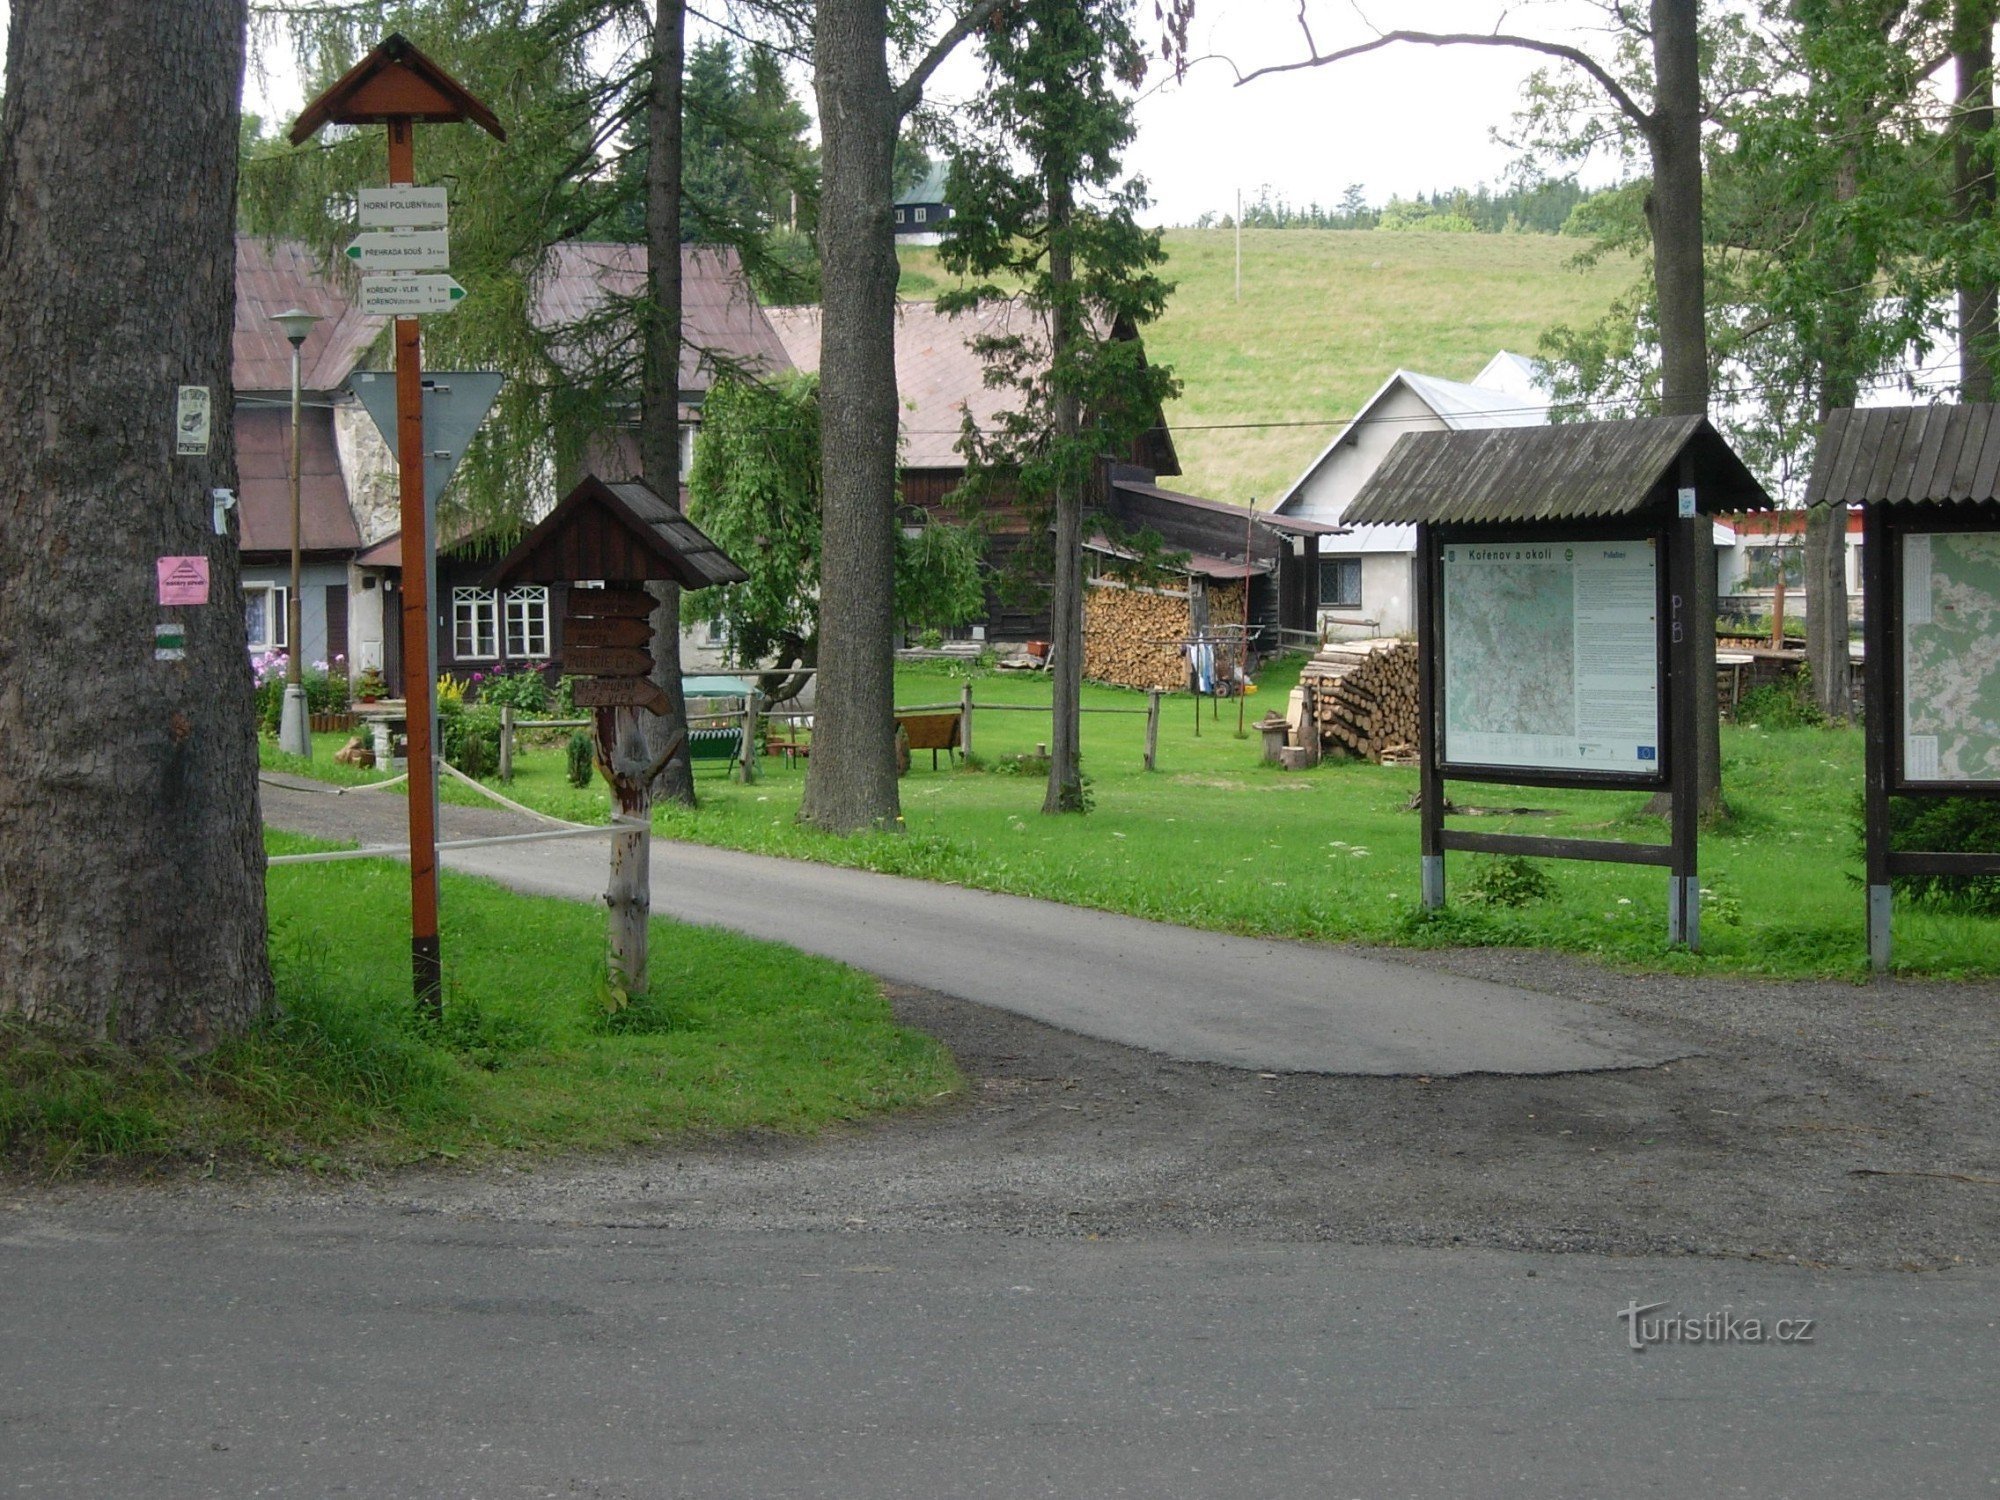 Putokaz u selu Horní Polubný